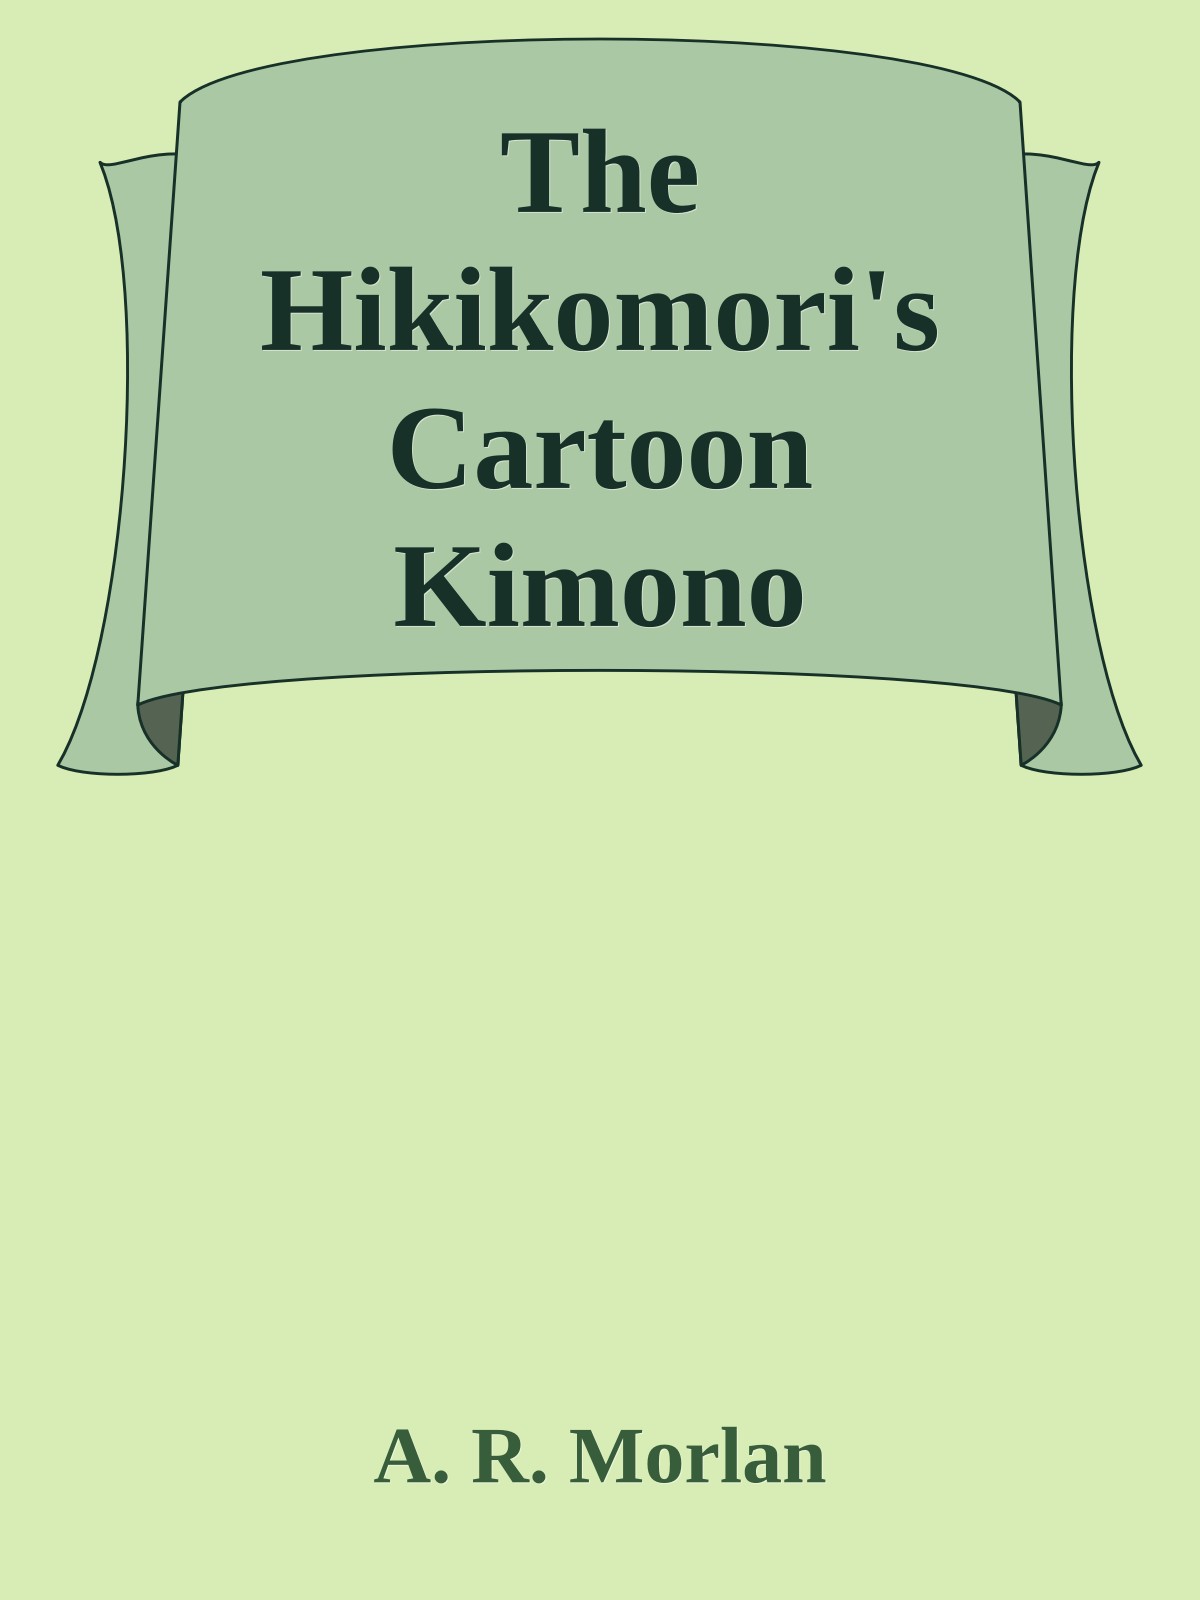 The Hikikomori's Cartoon Kimono